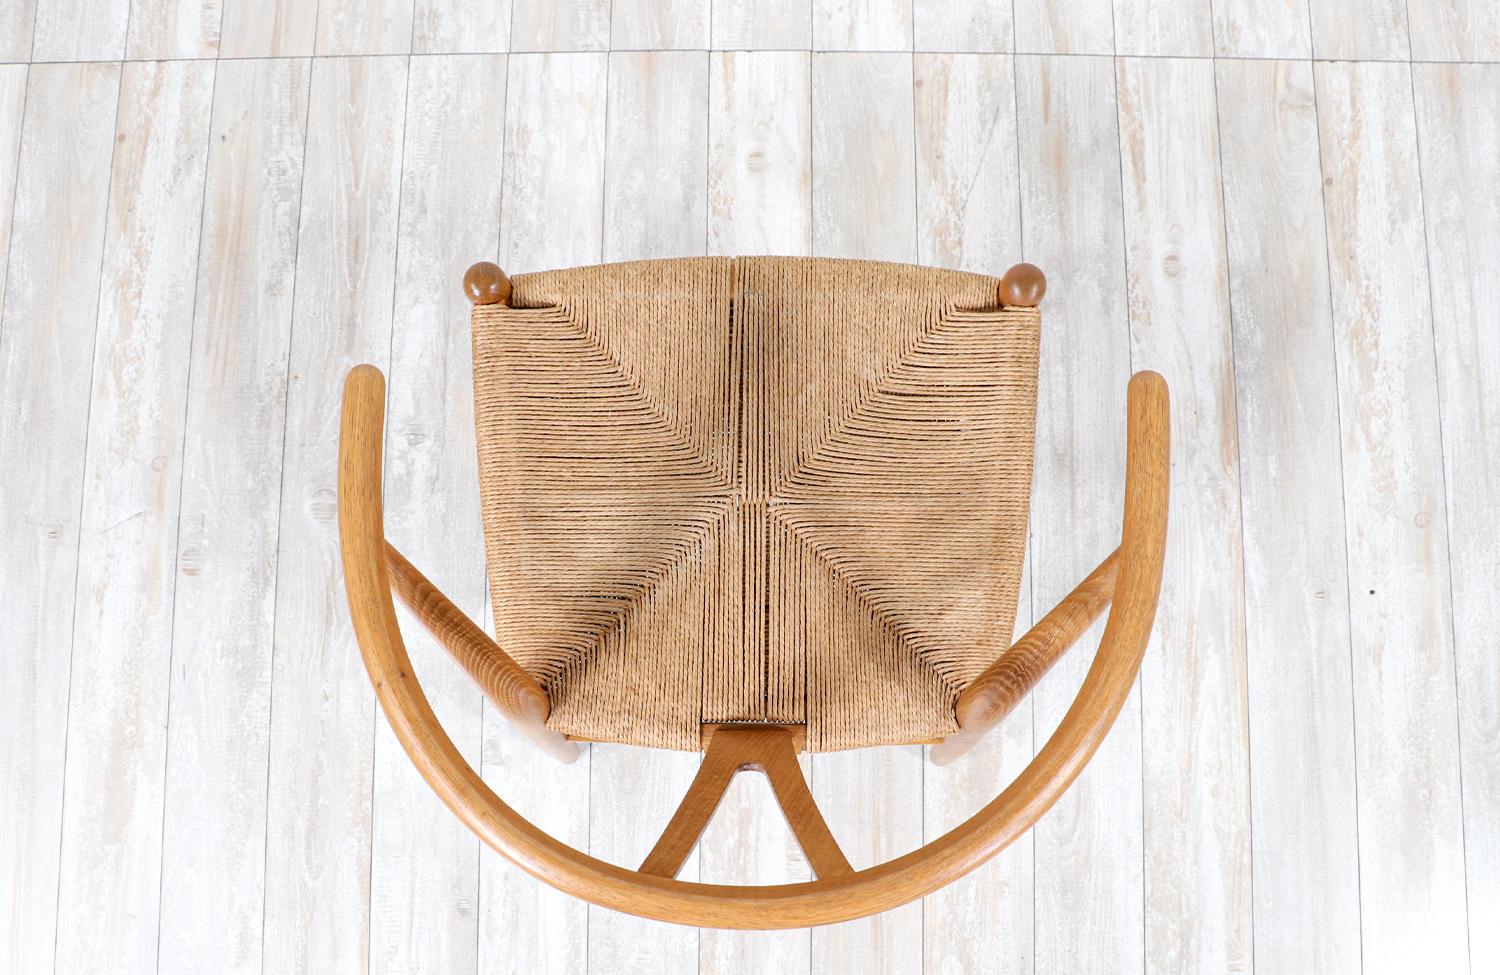 Rush Iconic Hans J. Wegner “Wishbone” Oak Arm Chair for Carl Hansen & Søn For Sale